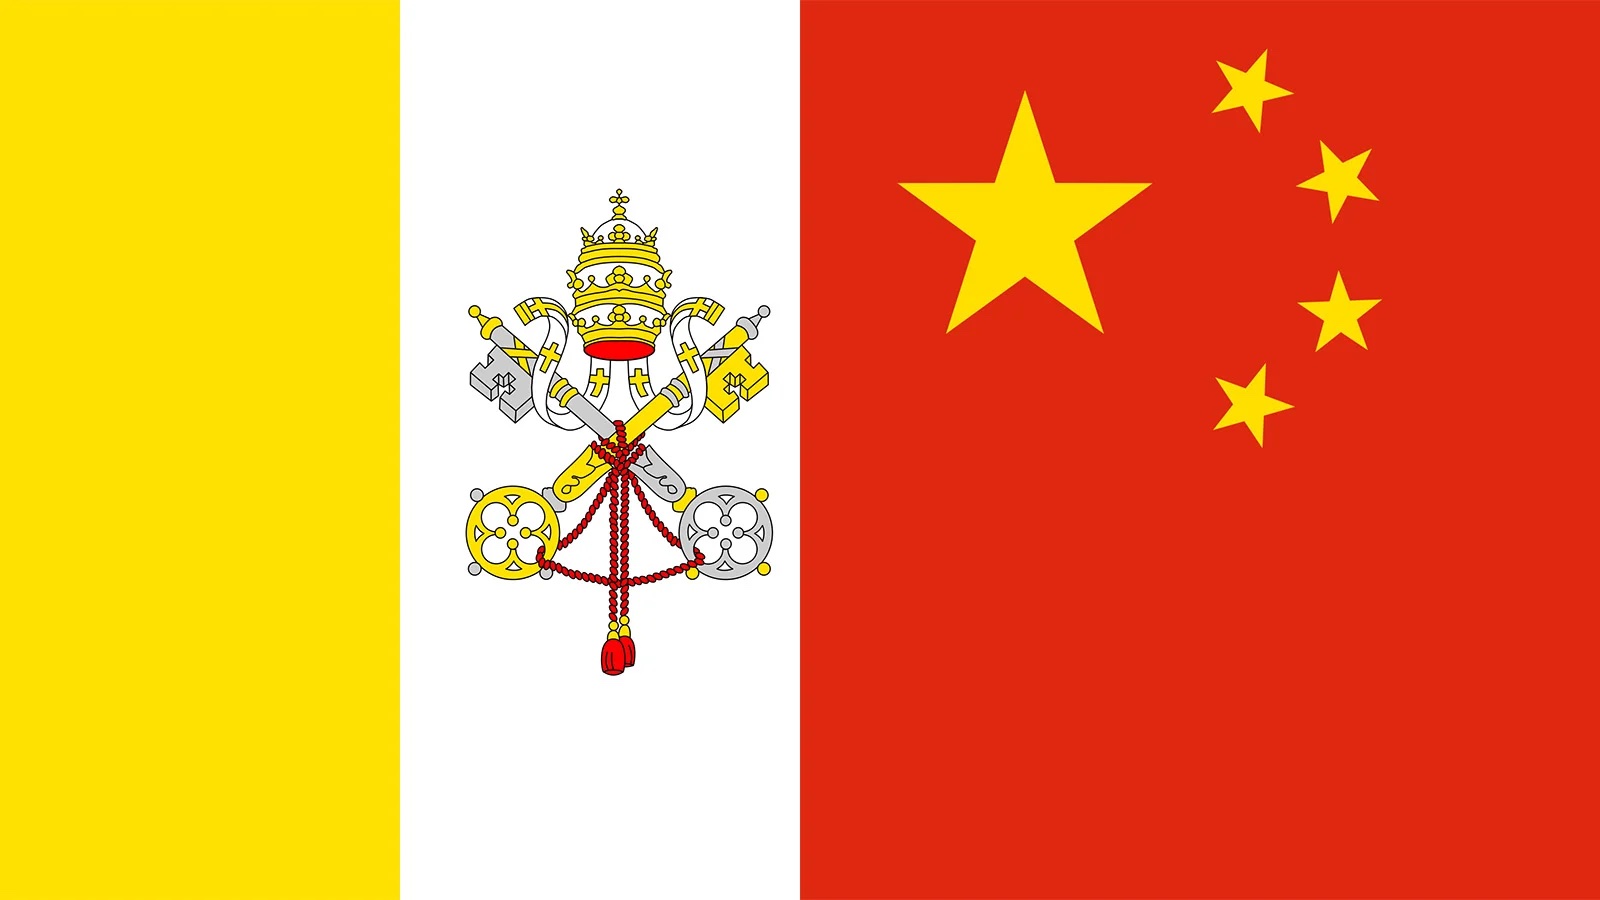 Члены американской комиссии по религиозной свободе выступают против сделки между Китаем и Ватиканом